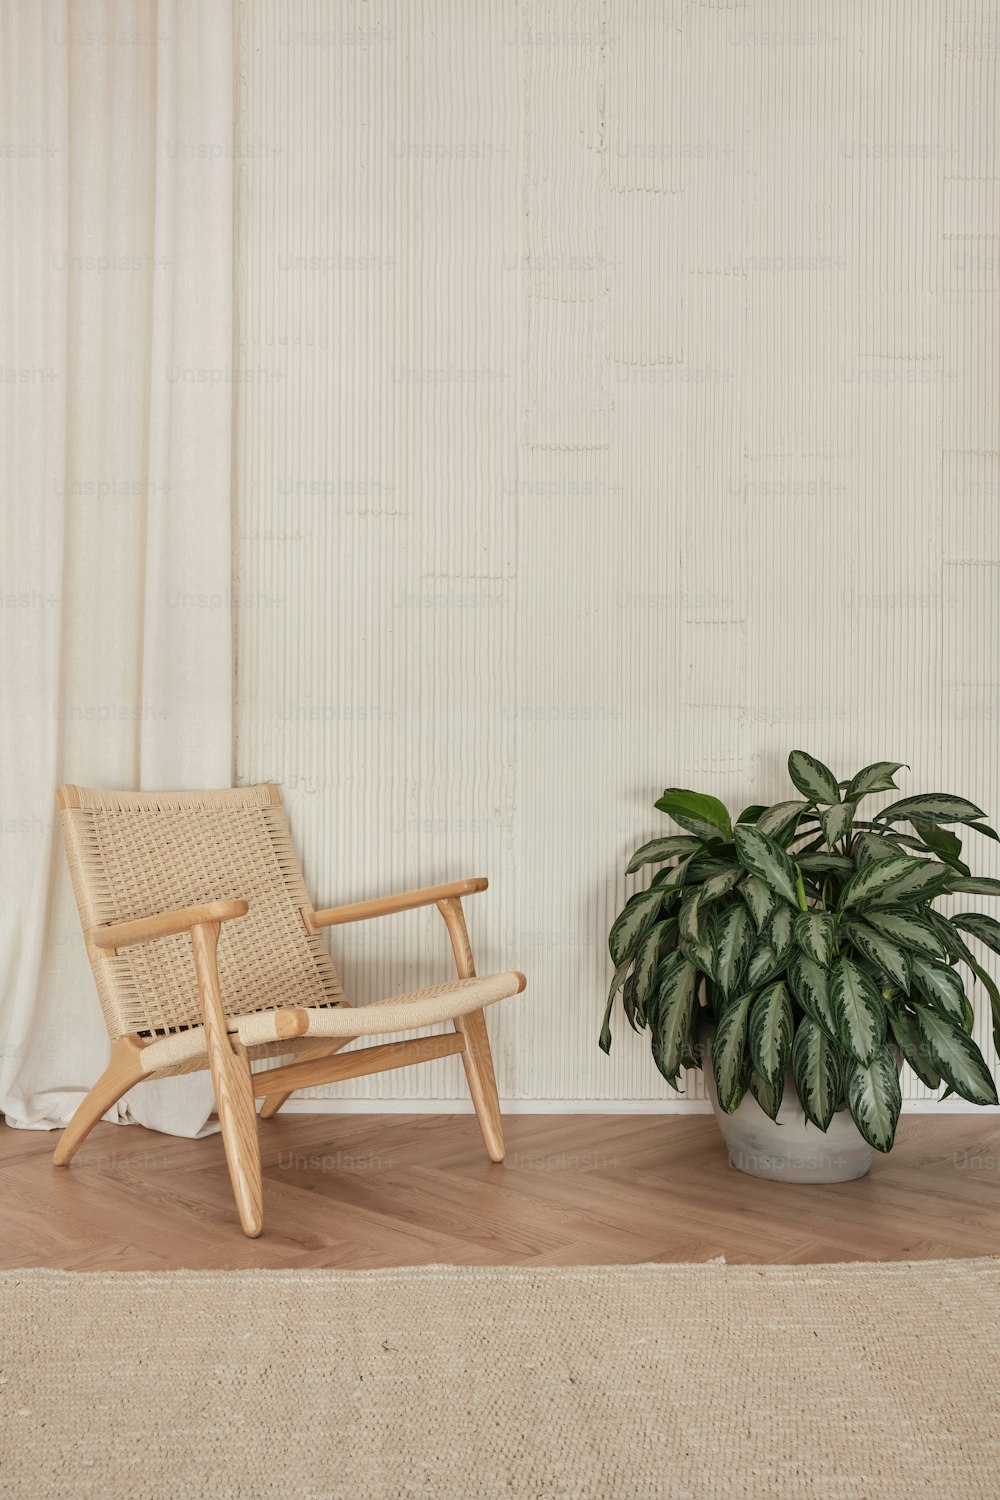 uma cadeira ao lado de um vaso de planta em um piso de madeira